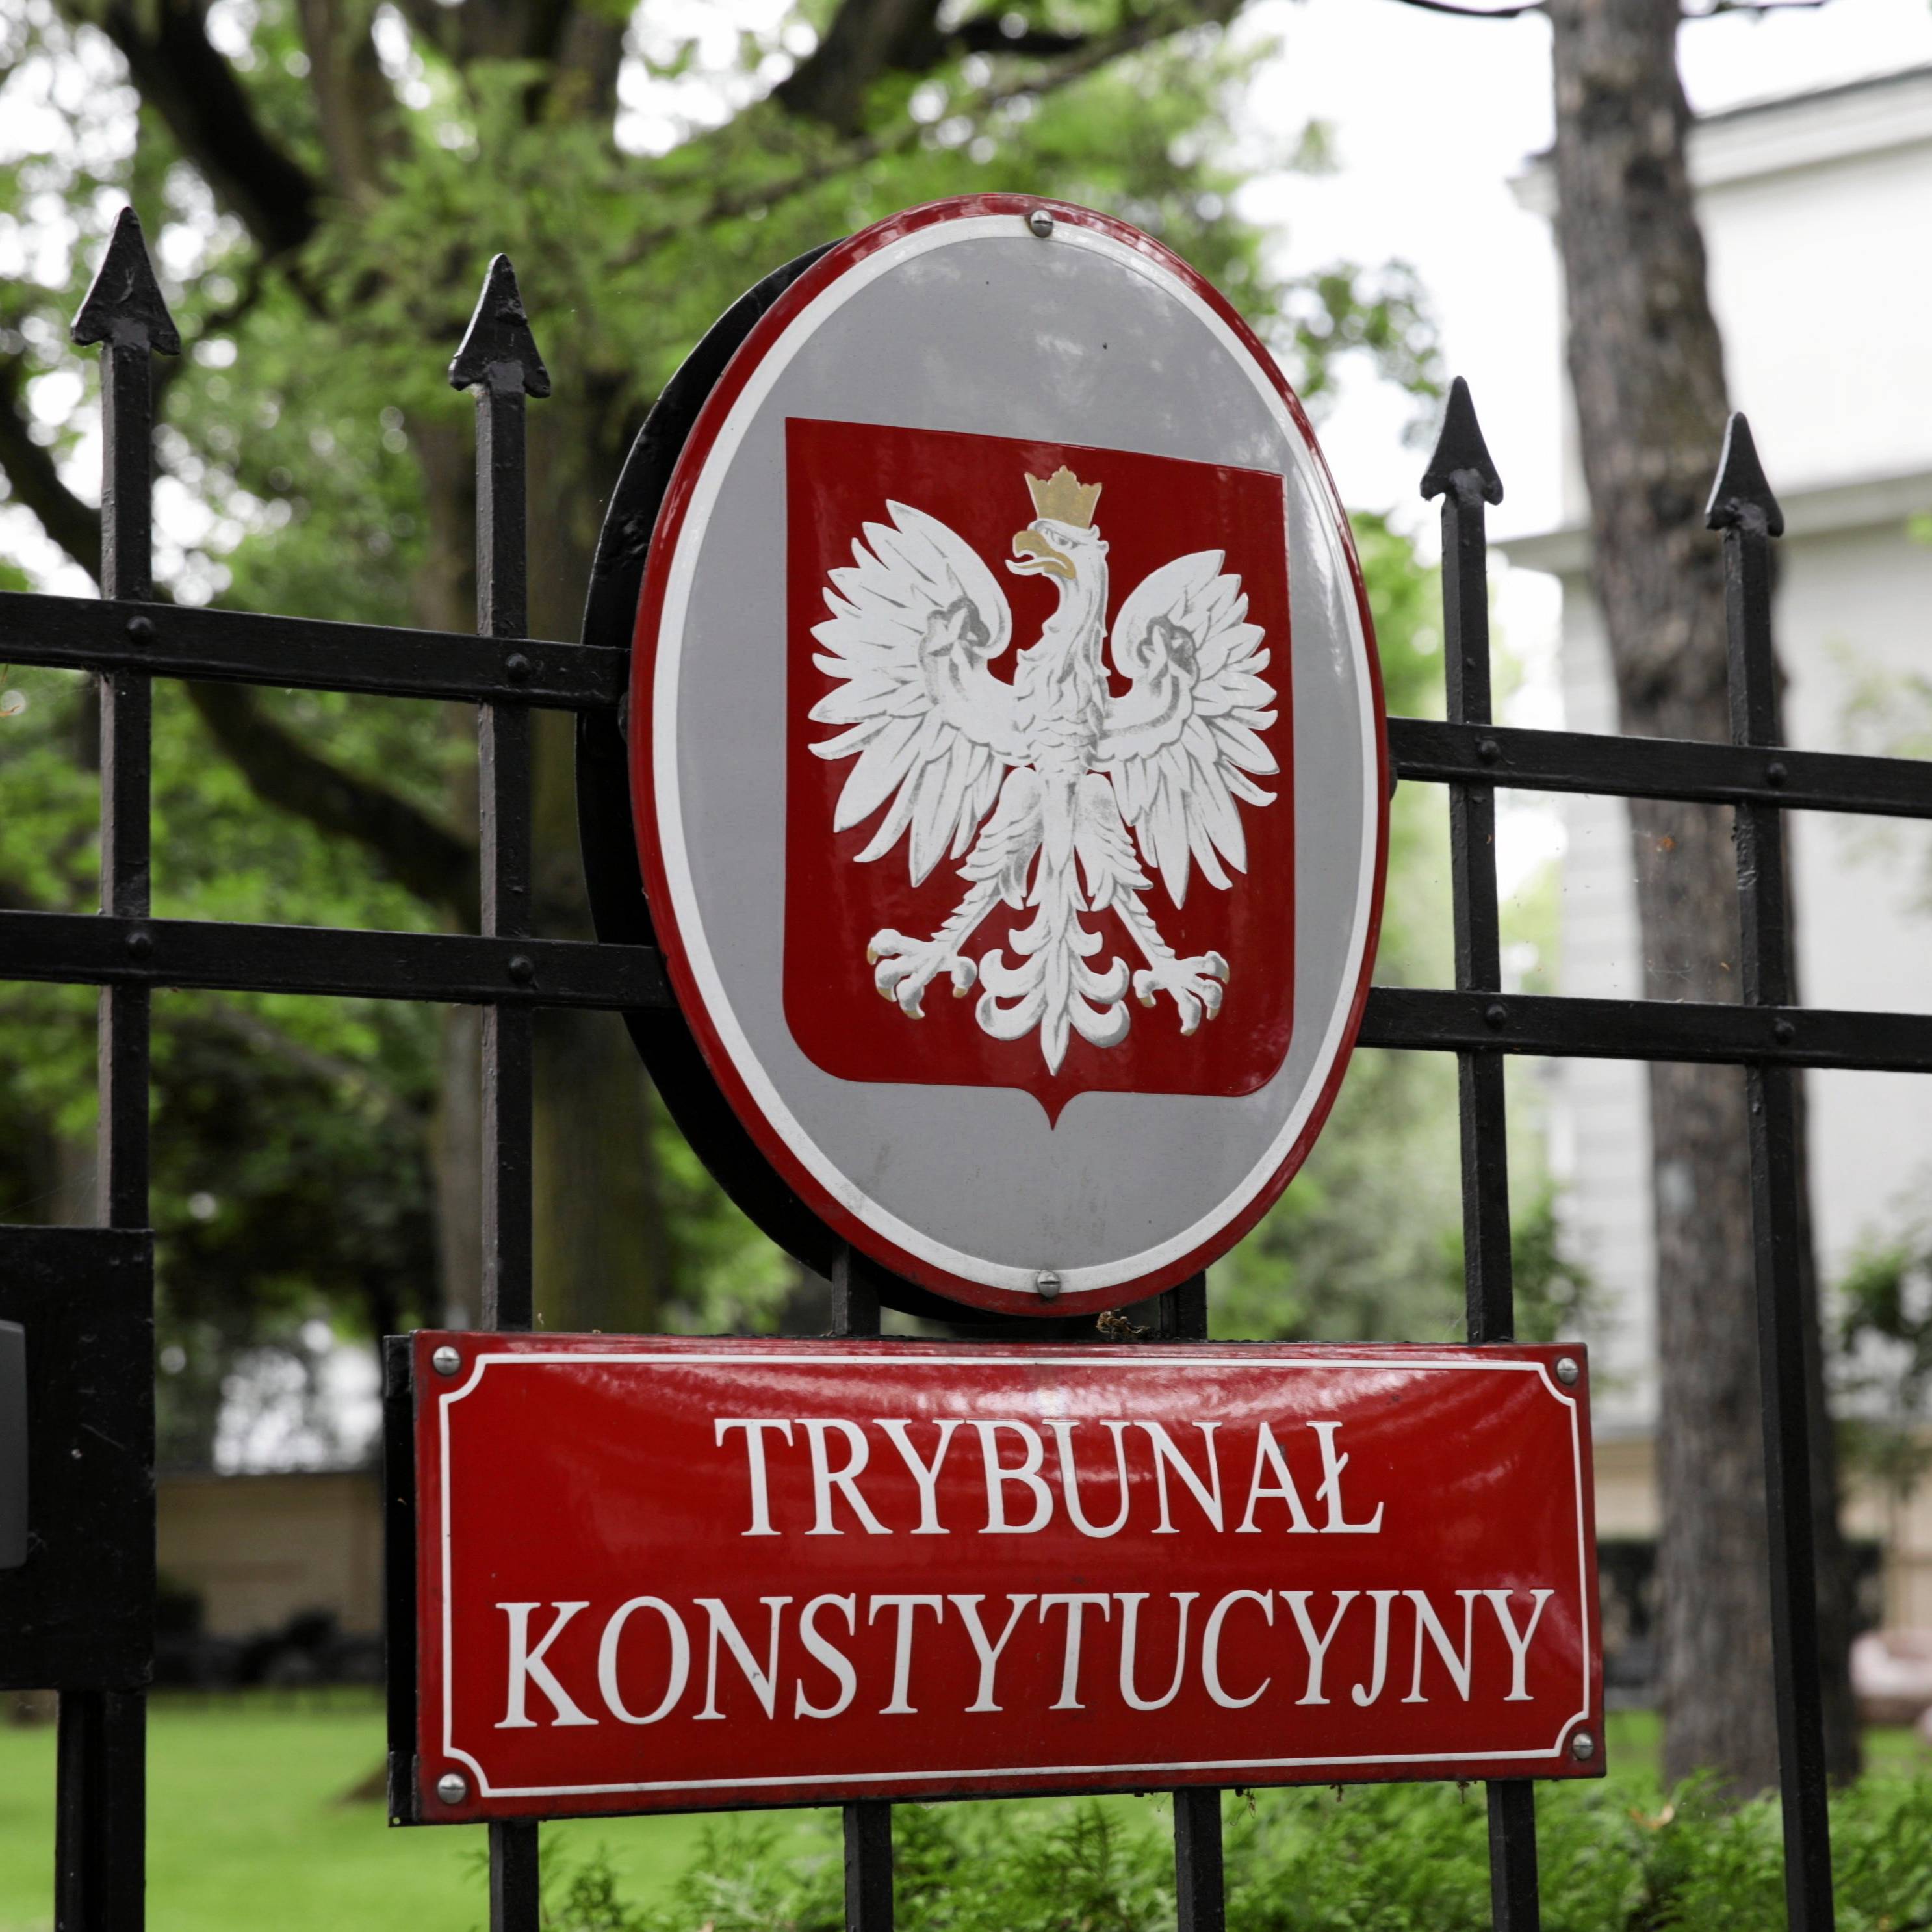 Zdjęcie na którym widać parkan otaczający siedzibę Trbunału Konstytucyjnego. Na płocie jest godło Polski i tabliczka z napisem Trybunał Konstytucyjny, za płotem jest bardzo zielono, dużo drzew, majaczy beżowy gmach